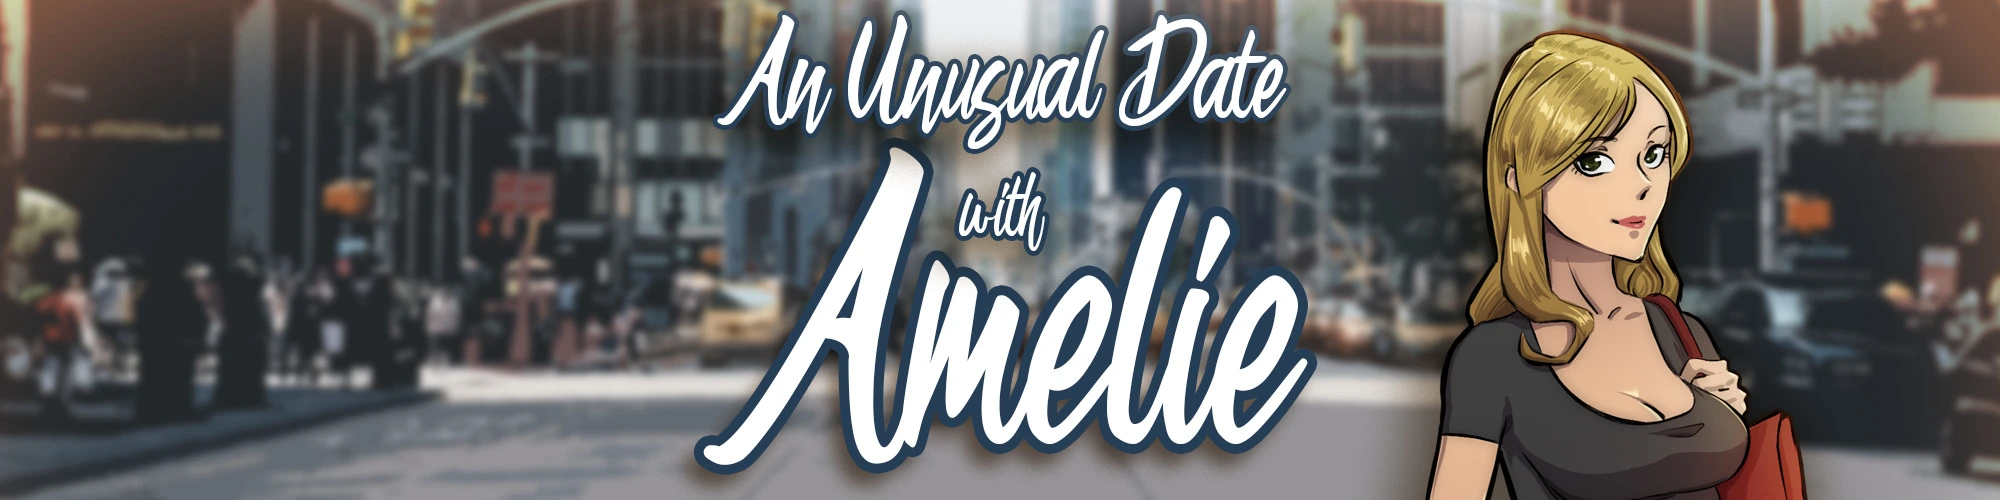 Игры цензура играть. An unusual Date: Amelie.